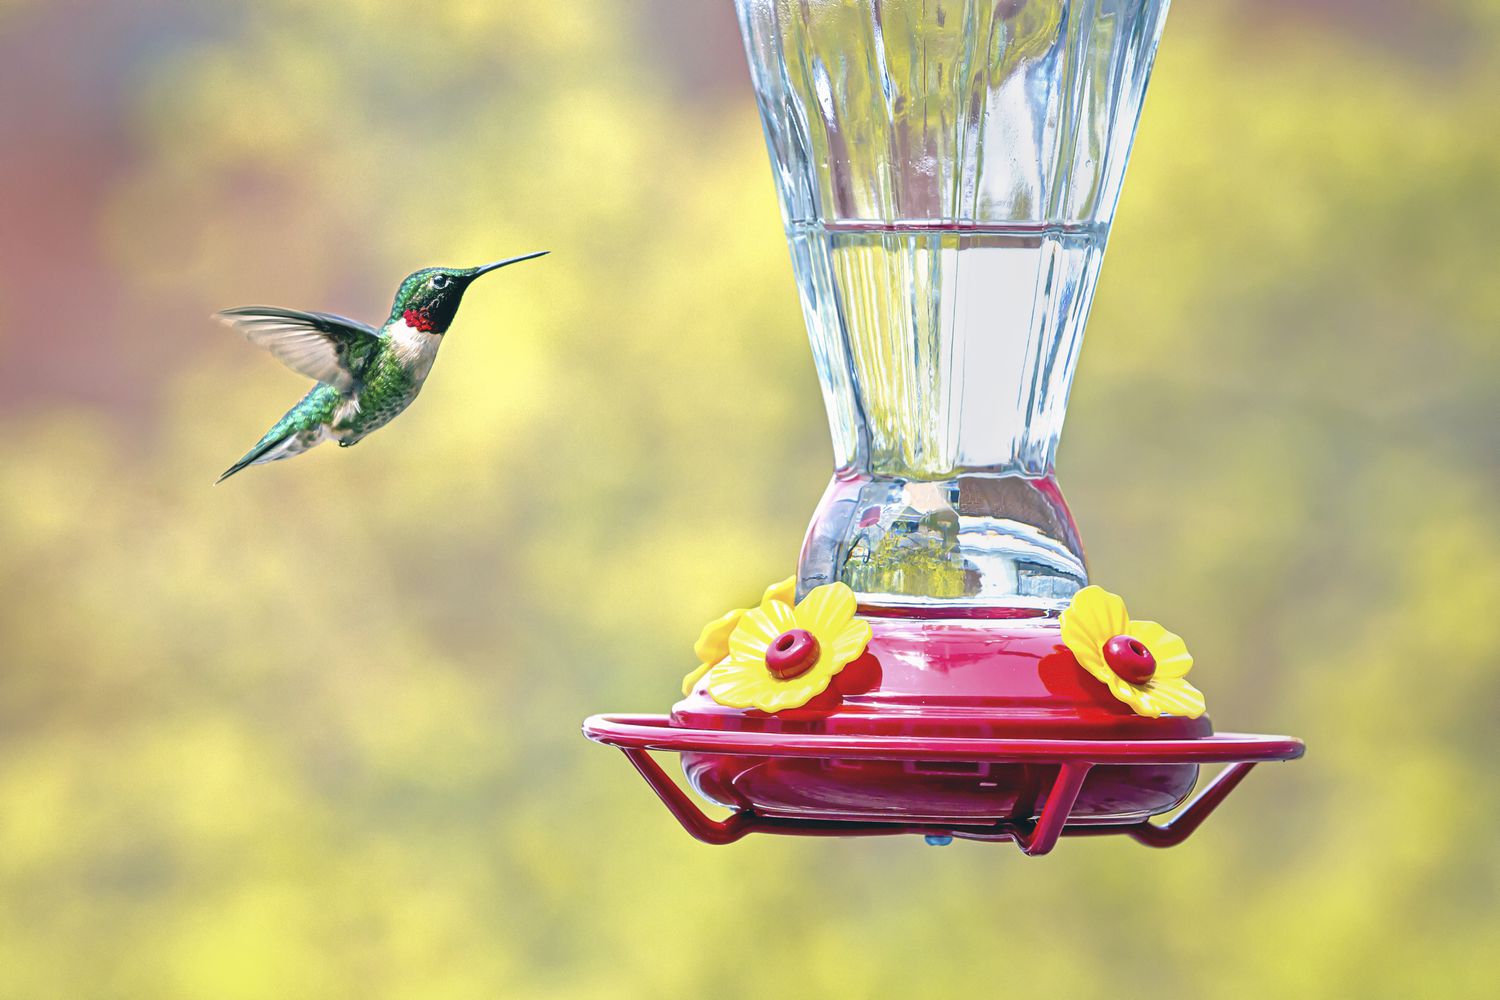 Kolibri fliegt in der Nähe eines roten Futterhäuschens.